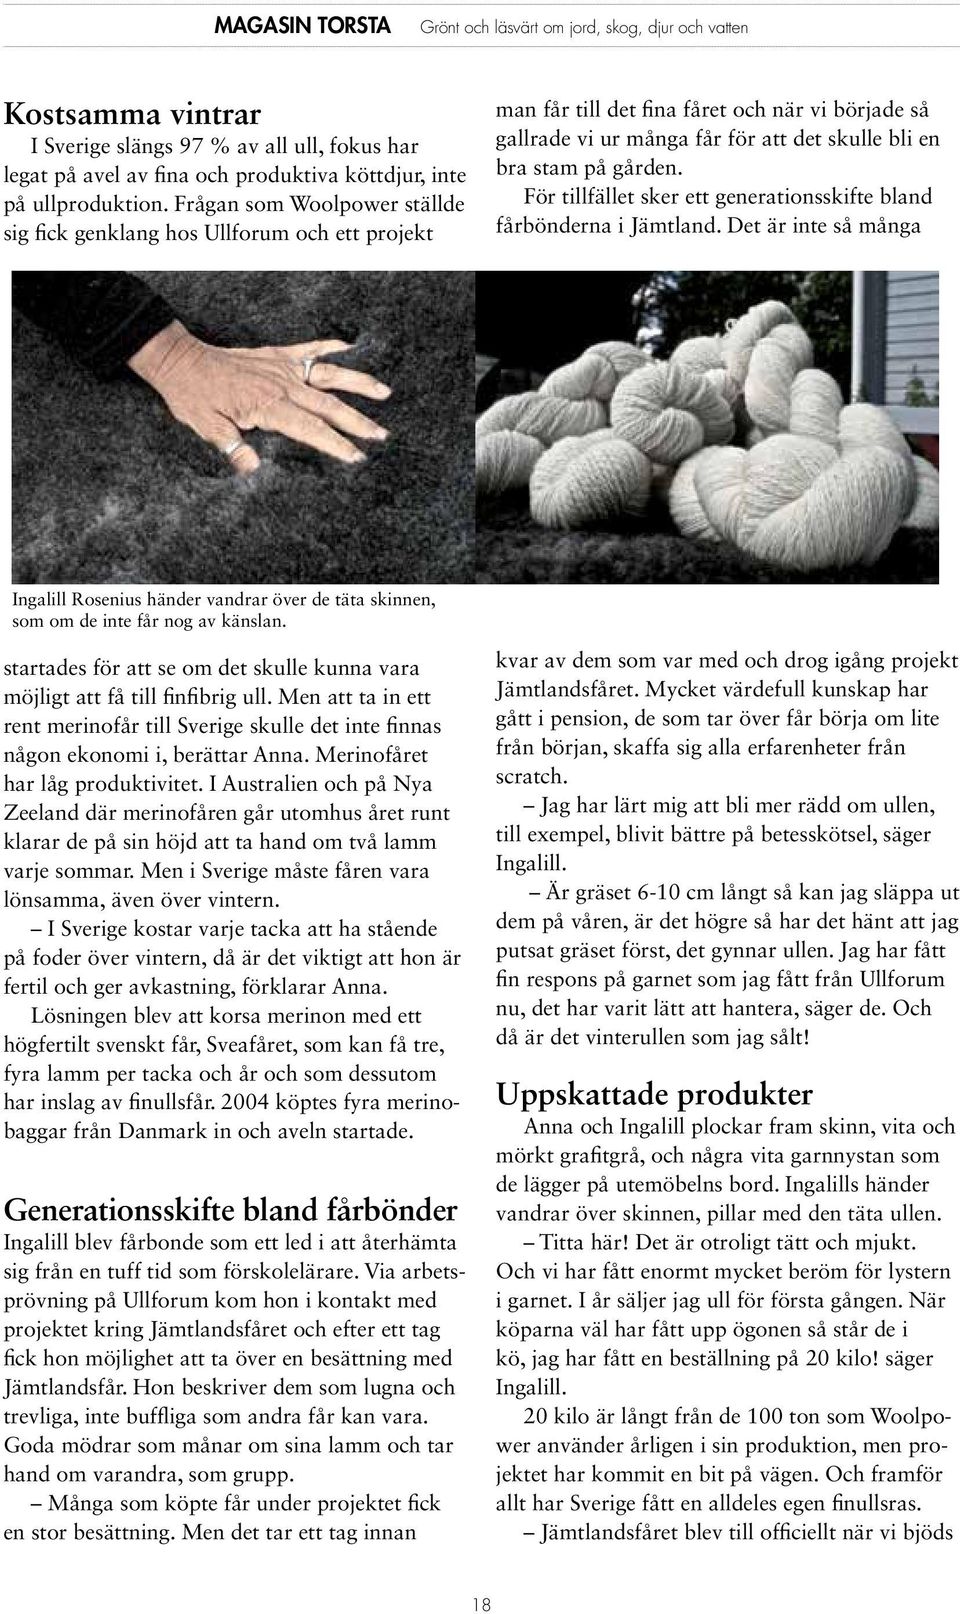 För tillfället sker ett generationsskifte bland fårbönderna i Jämtland. Det är inte så många Ingalill Rosenius händer vandrar över de täta skinnen, som om de inte får nog av känslan.